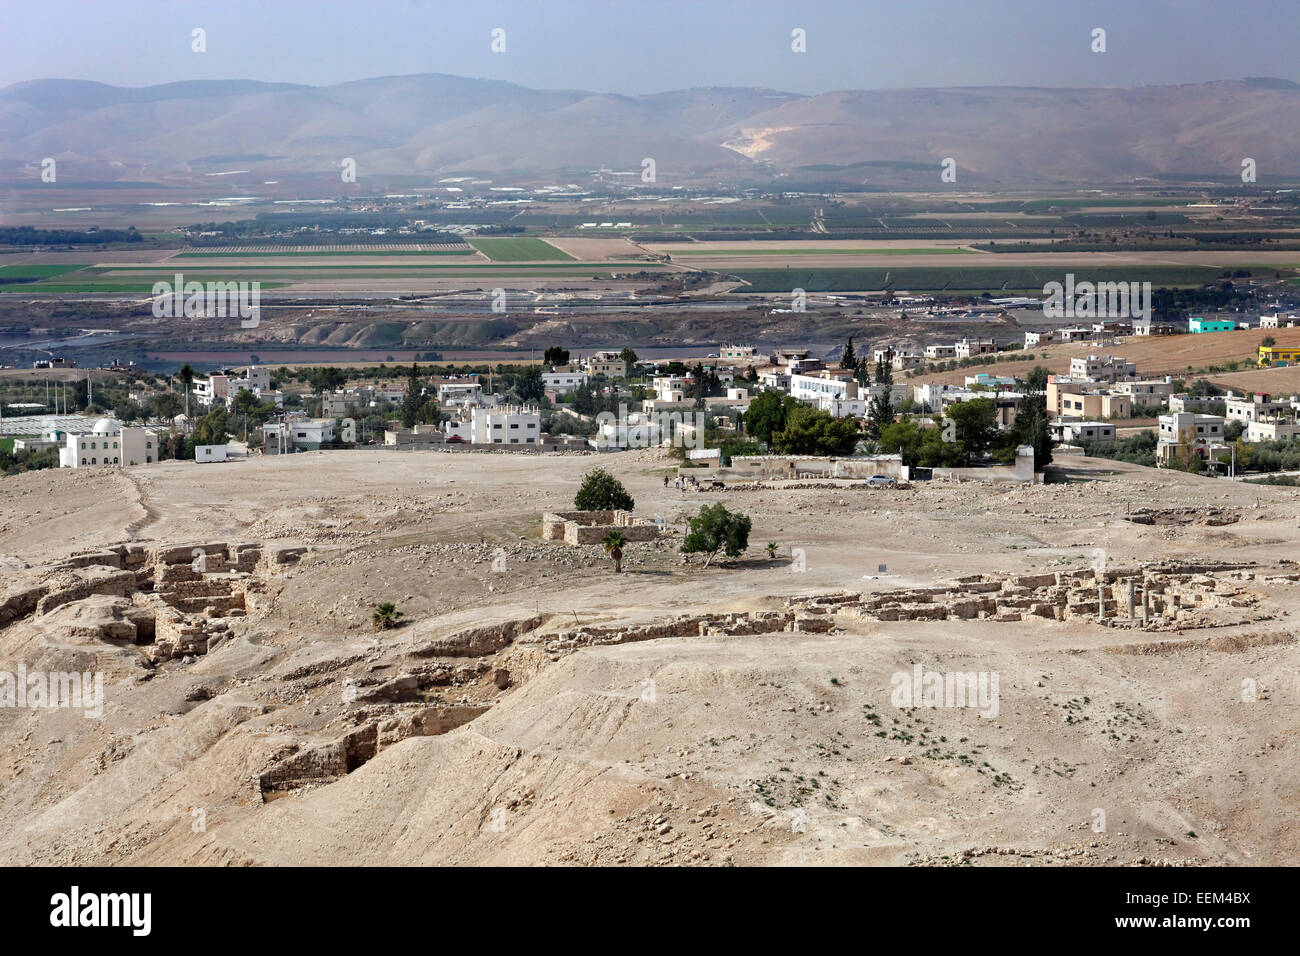 Vista del sitio arqueológico de Pella Tabaqat Fahl, también, en el valle del Jordán, cerca de Irbid, Jordania Foto de stock